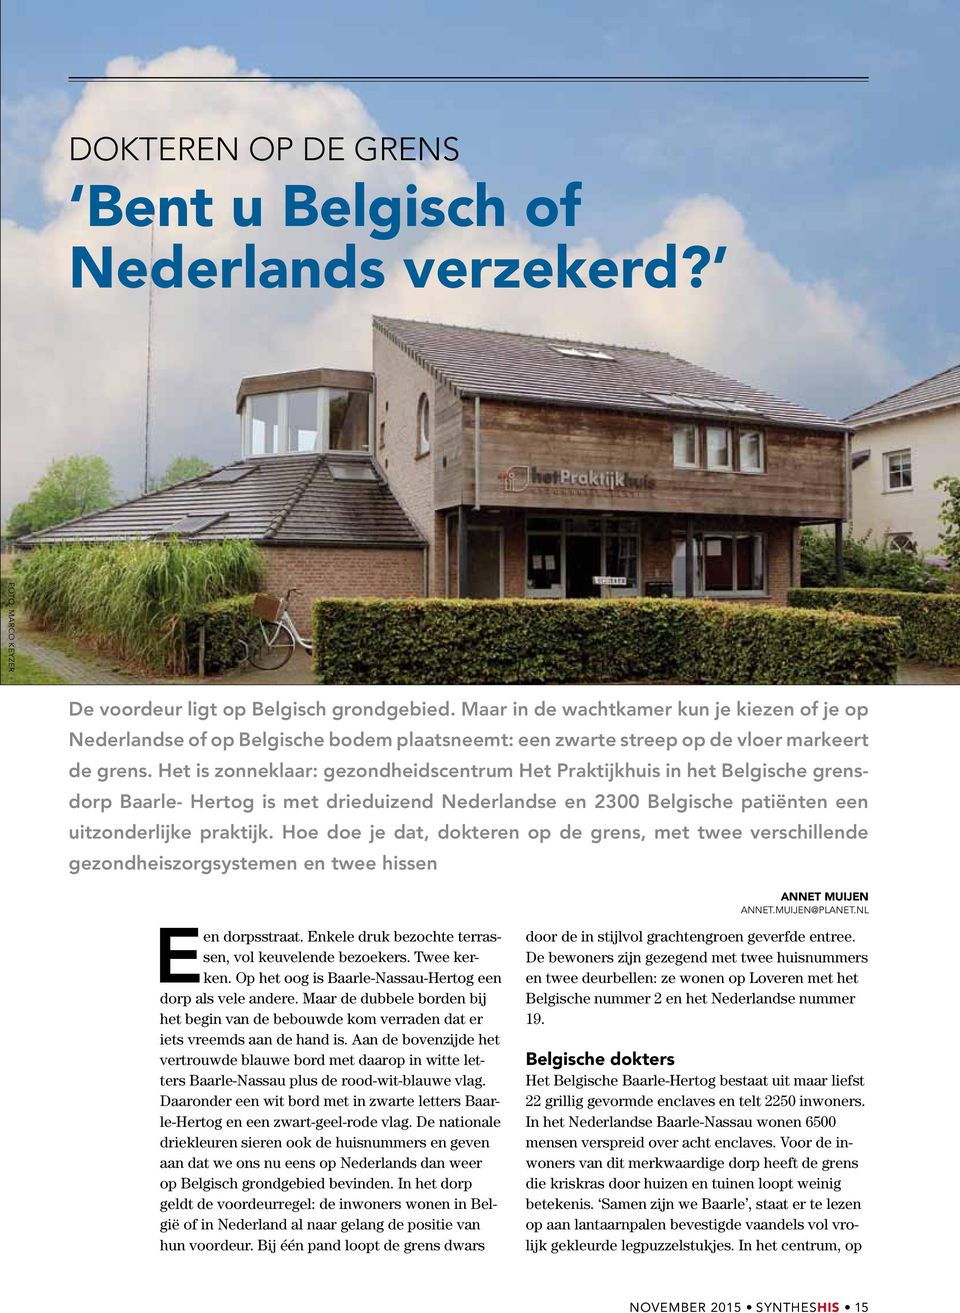 Het is zonneklaar: gezondheidscentrum Het Praktijkhuis in het Belgische grensdorp Baarle- Hertog is met drieduizend Nederlandse en 2300 Belgische patiënten een uitzonderlijke praktijk.